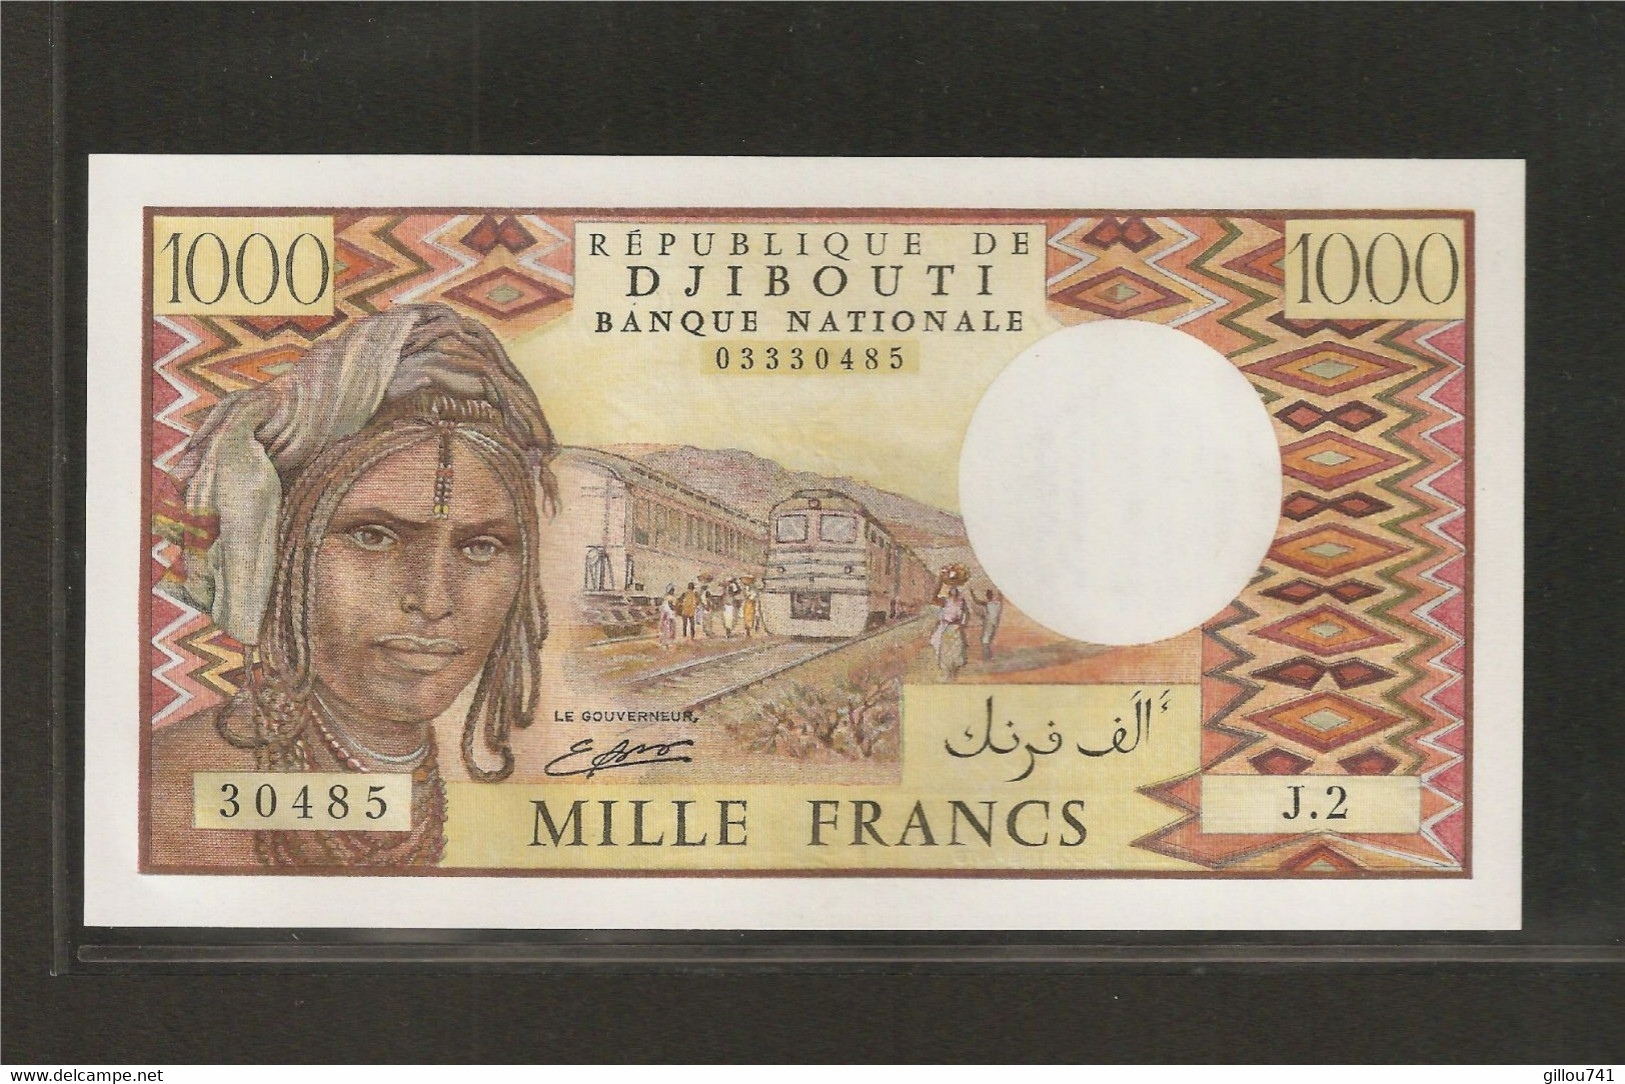 Djibouti, 1,000 Francs, 1979-1988 ND Issue - Djibouti